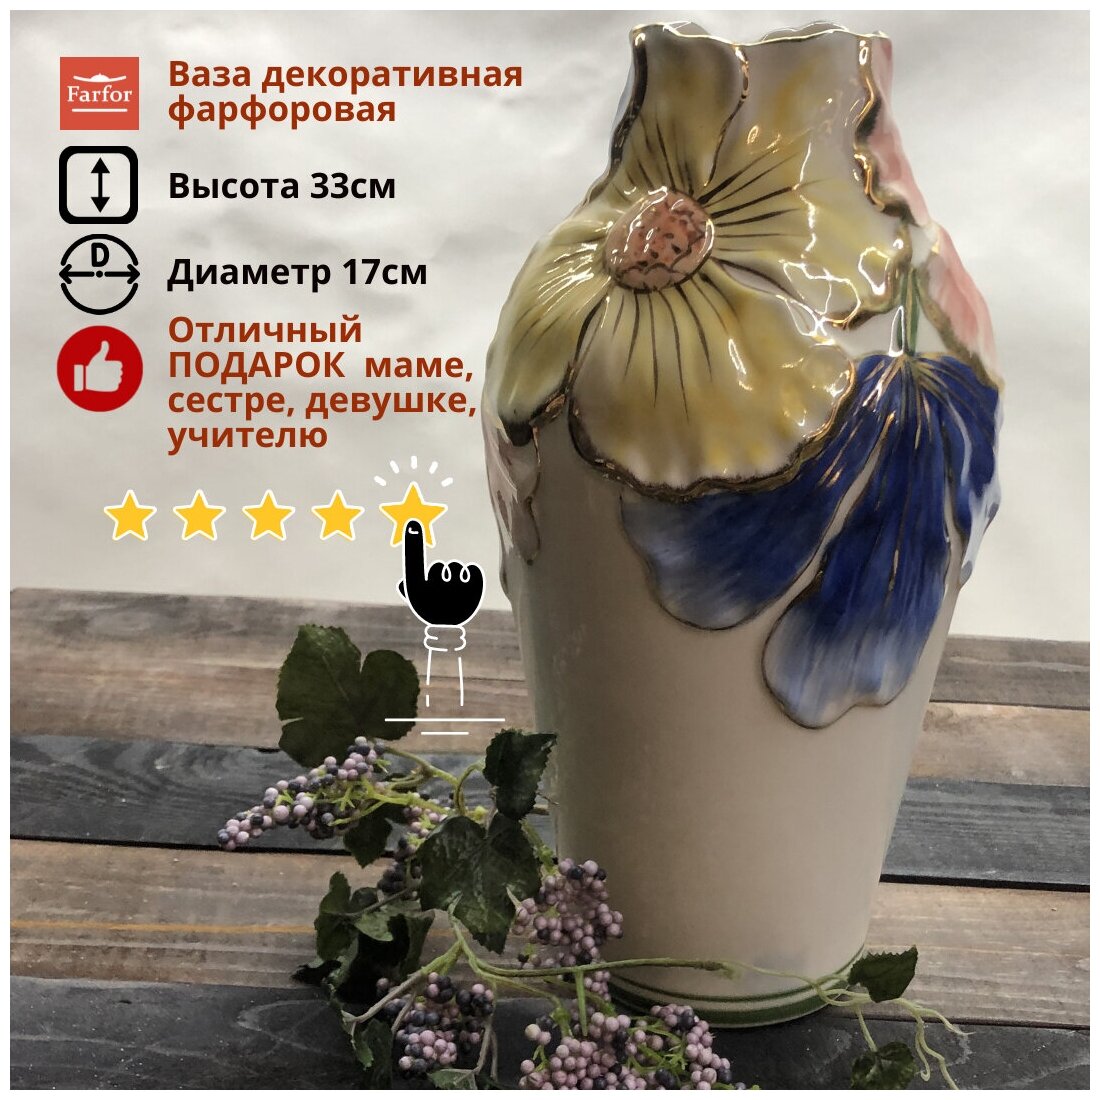 Ваза для цветов, ваза интерьерная, фарфор, керамическая ваза 33см